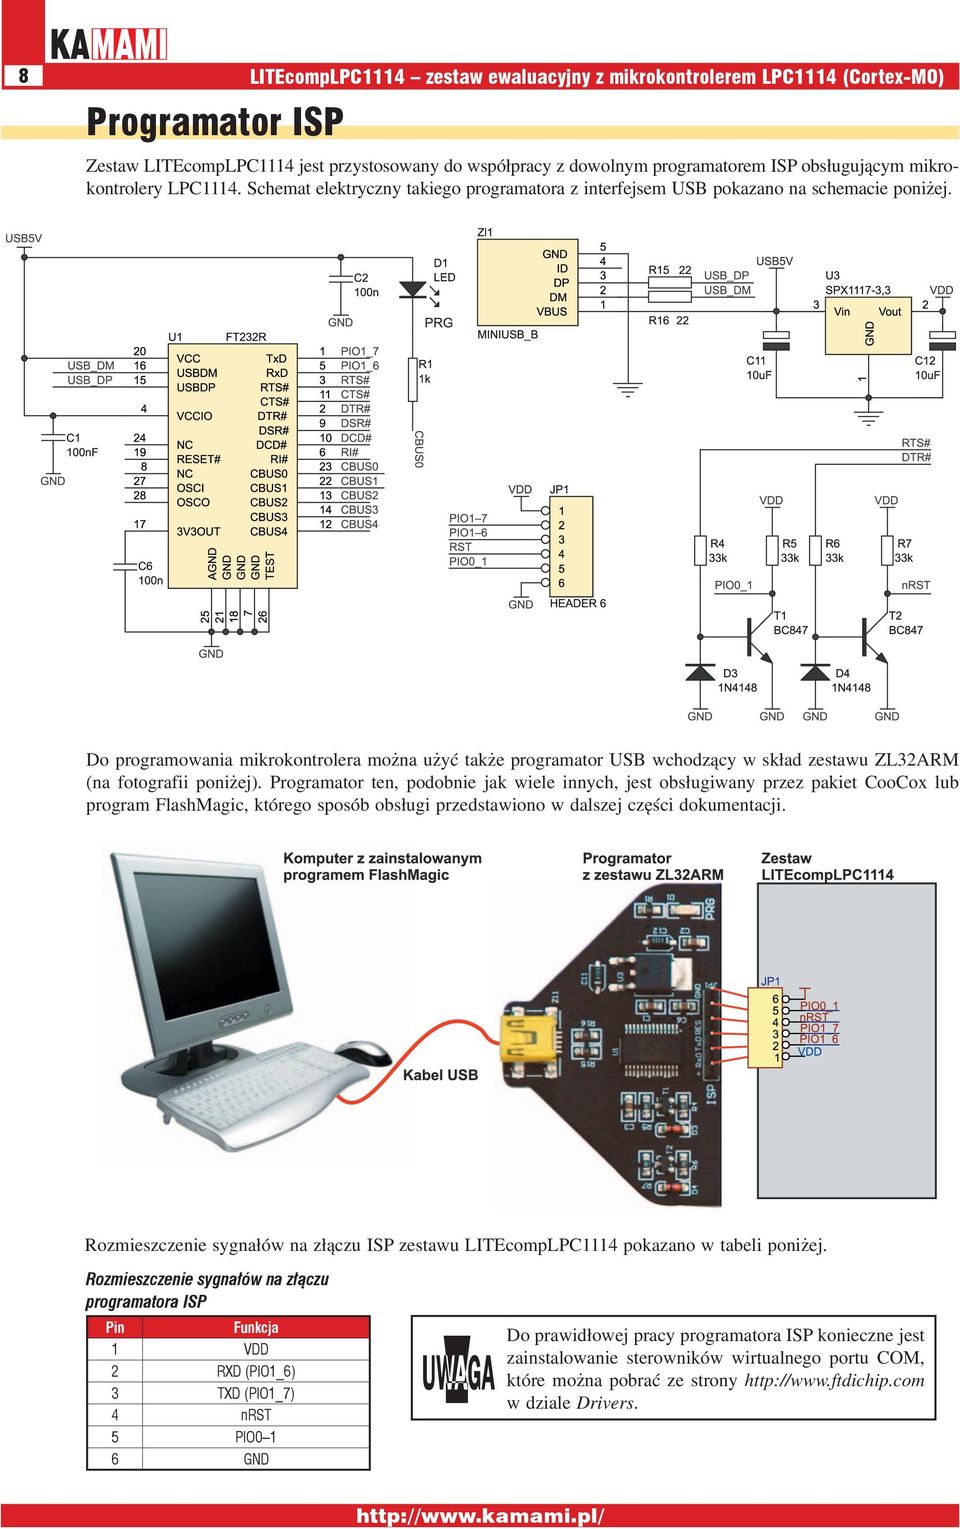 Do programowania mikrokontrolera można użyć także programator USB wchodzący w skład zestawu ZL32ARM (na fotografii poniżej).